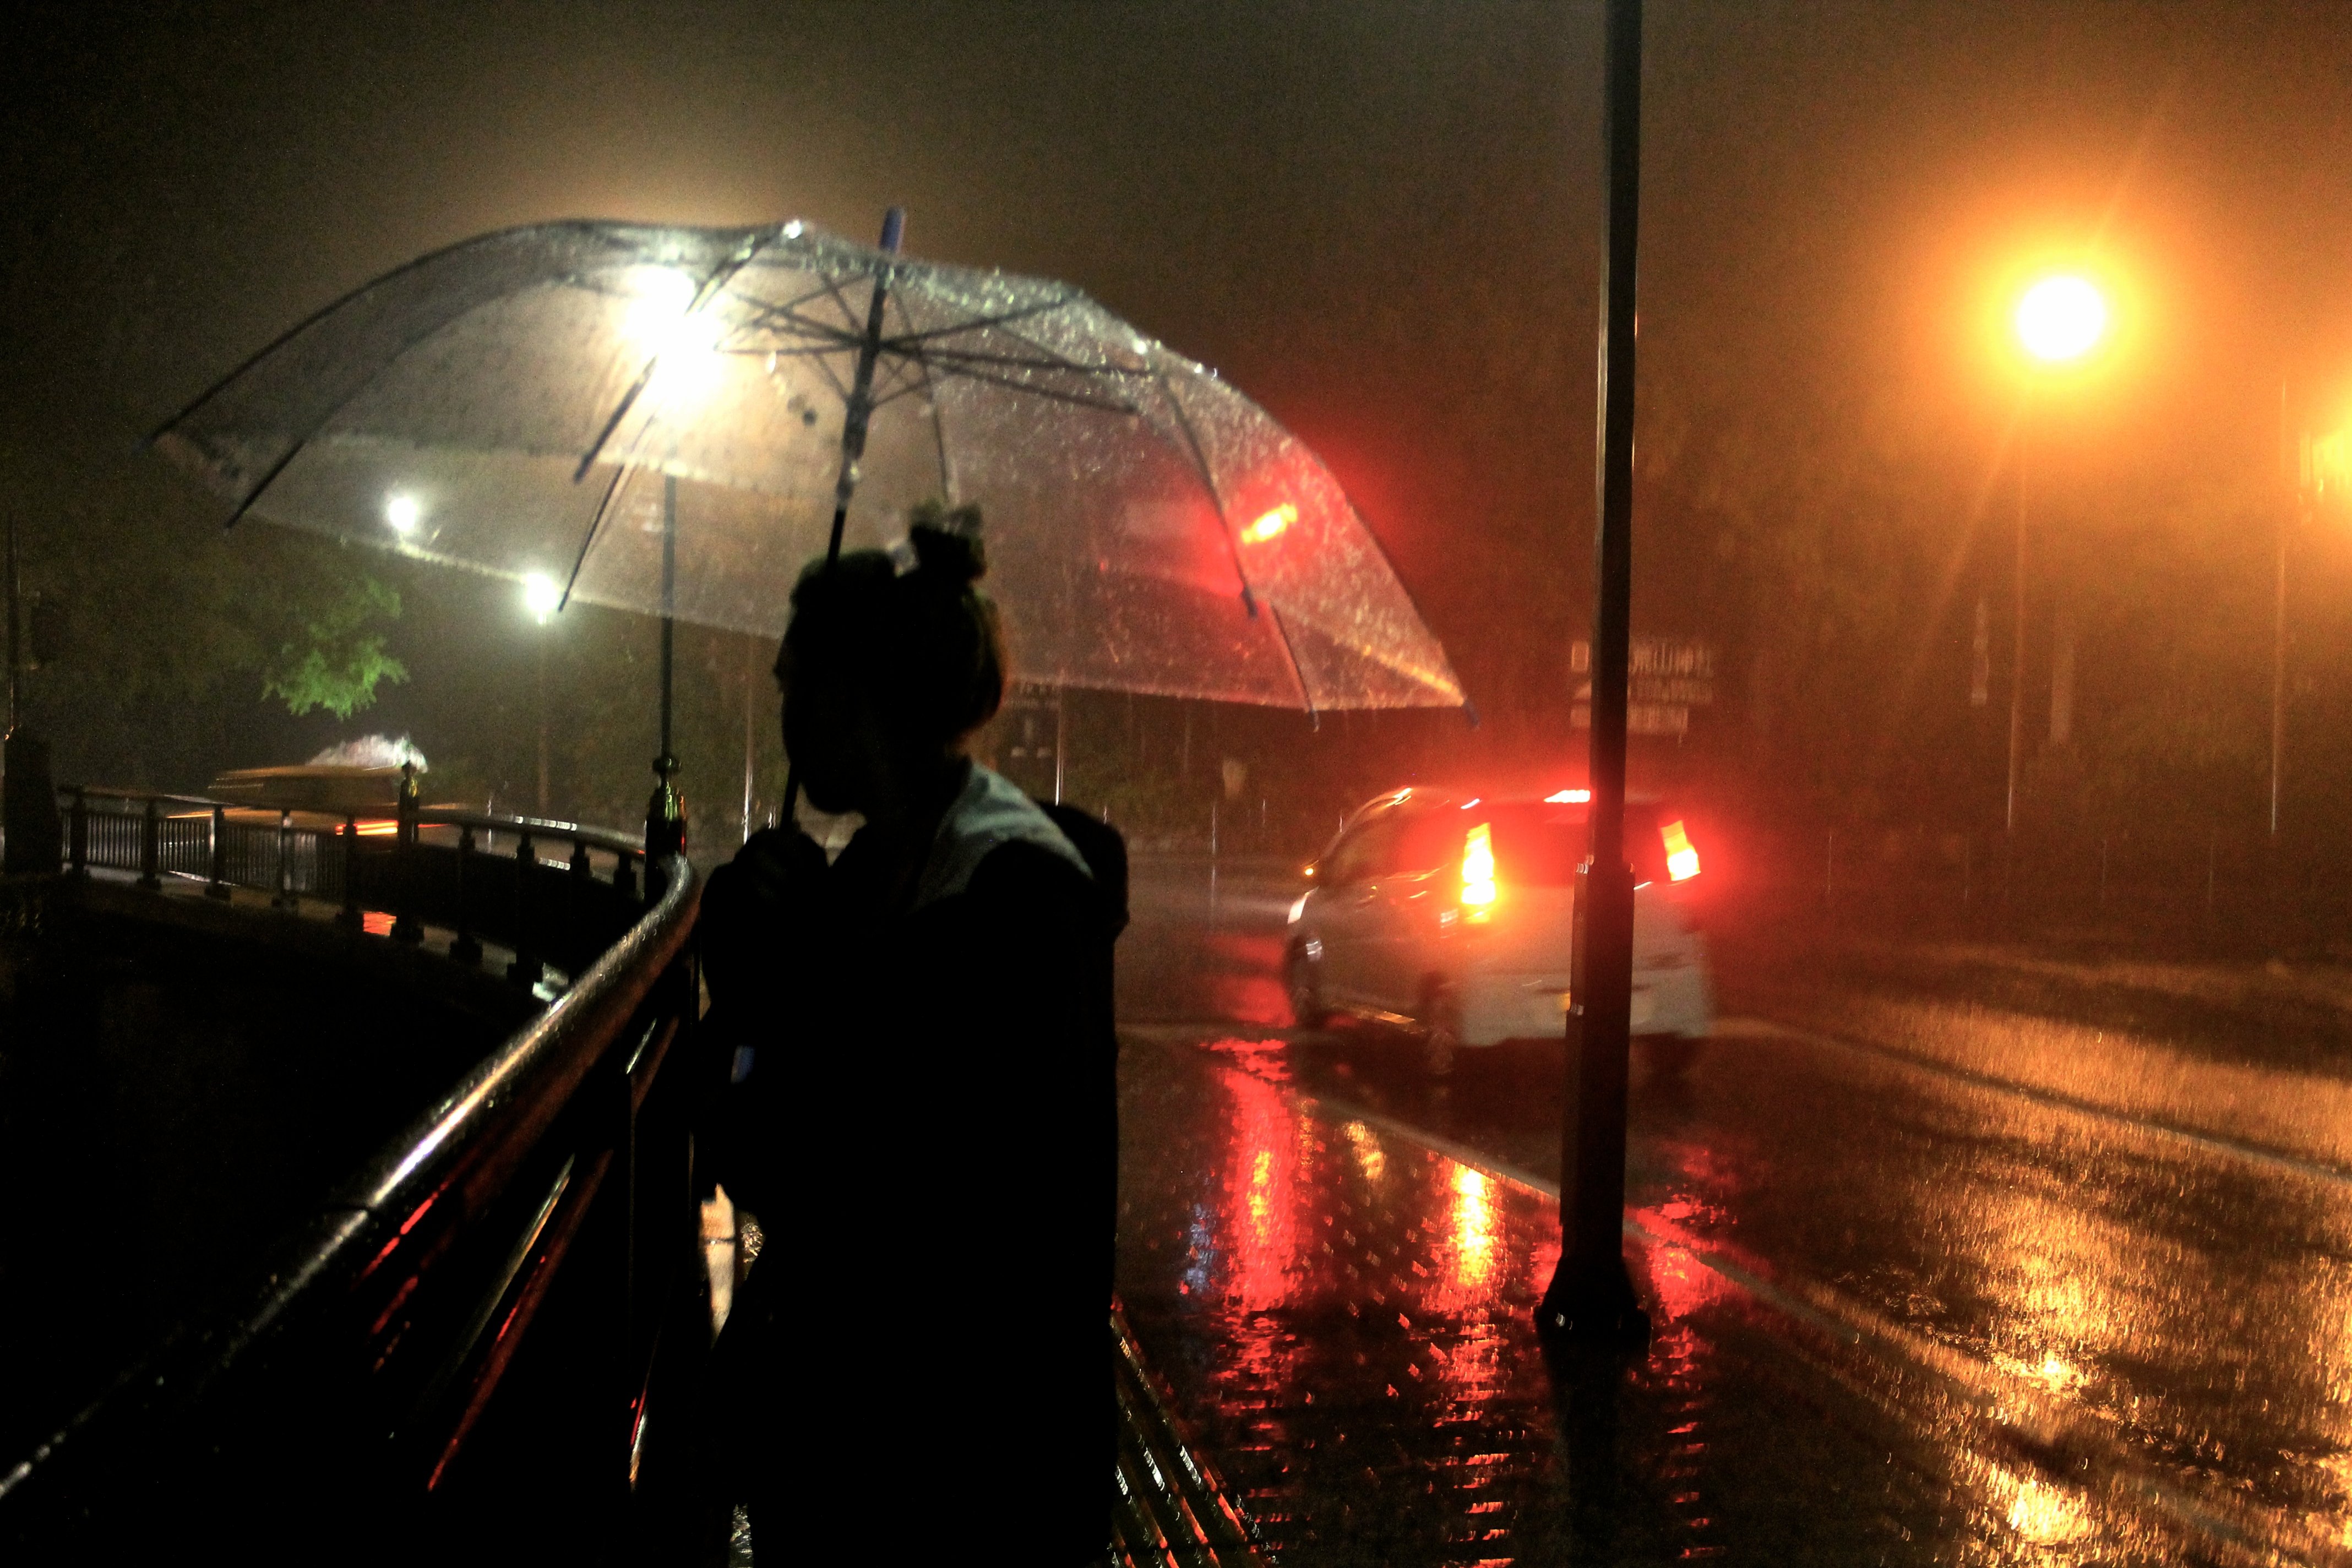 Поздним ненастным вечером геологи. Дождь ночью. Человек под зонтом. Город ночью под дождем. "Дождливый вечер".